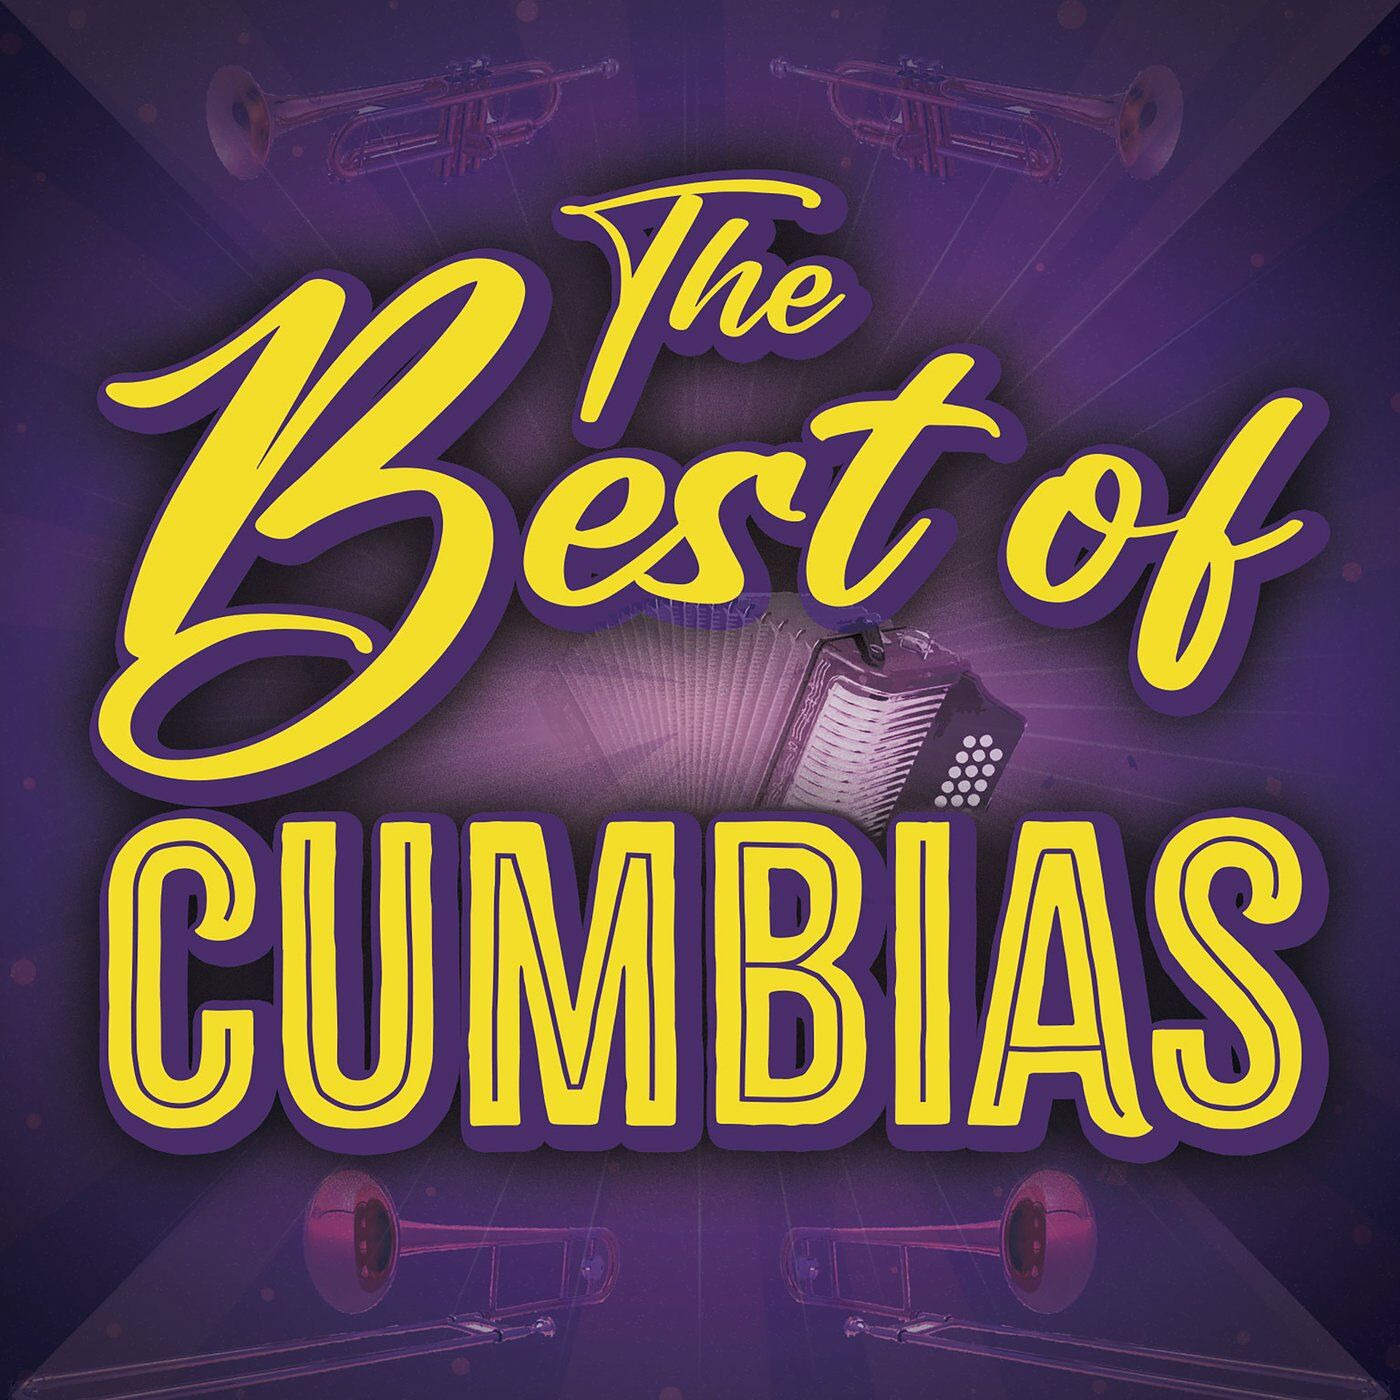 The Best of Cumbias Telegraph